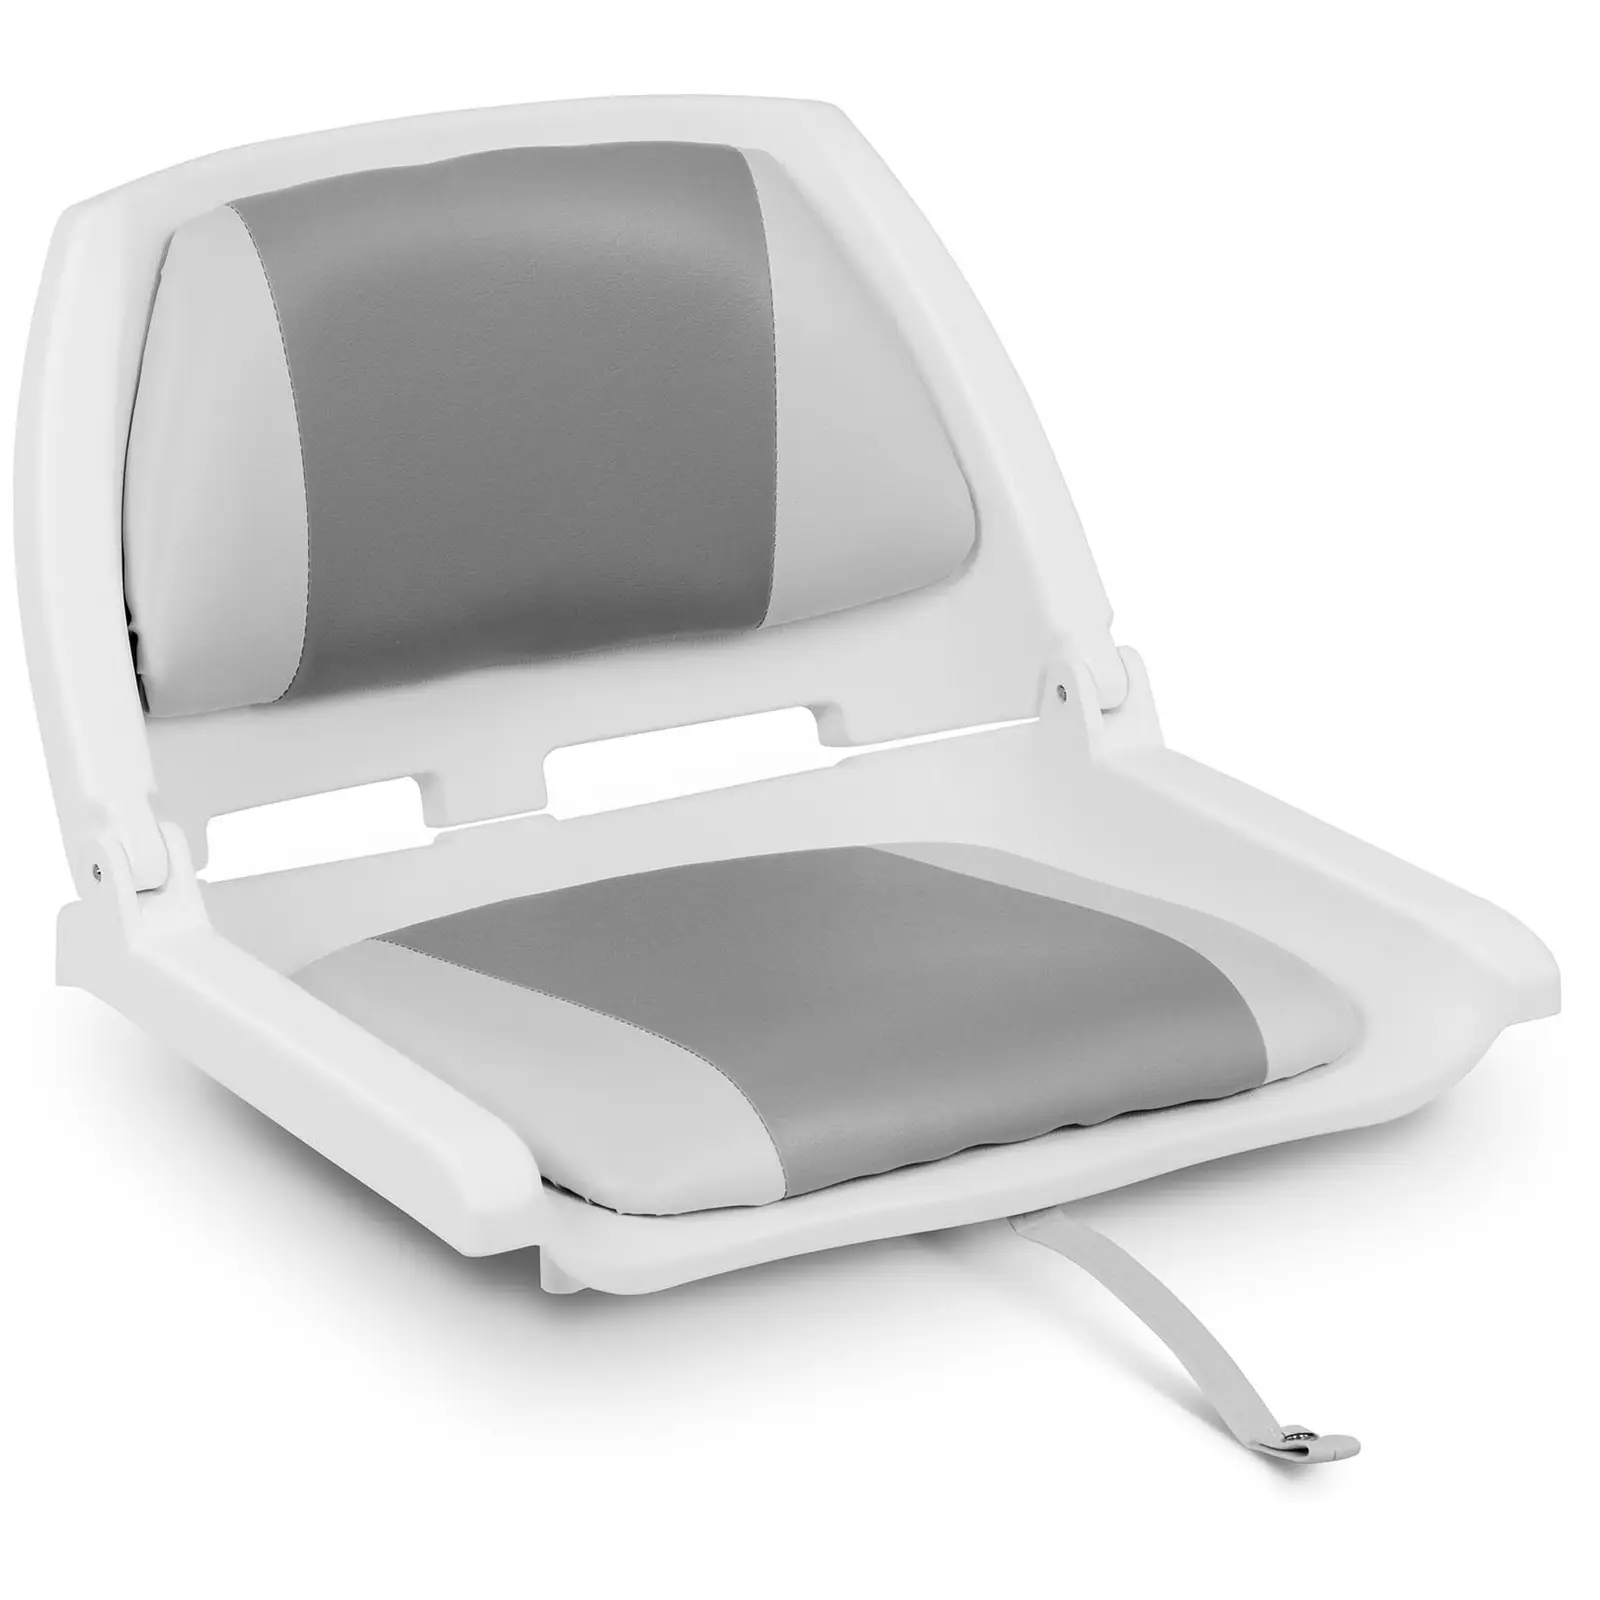 Valties sėdynė - 45x51x38 cm - balta ir pilka